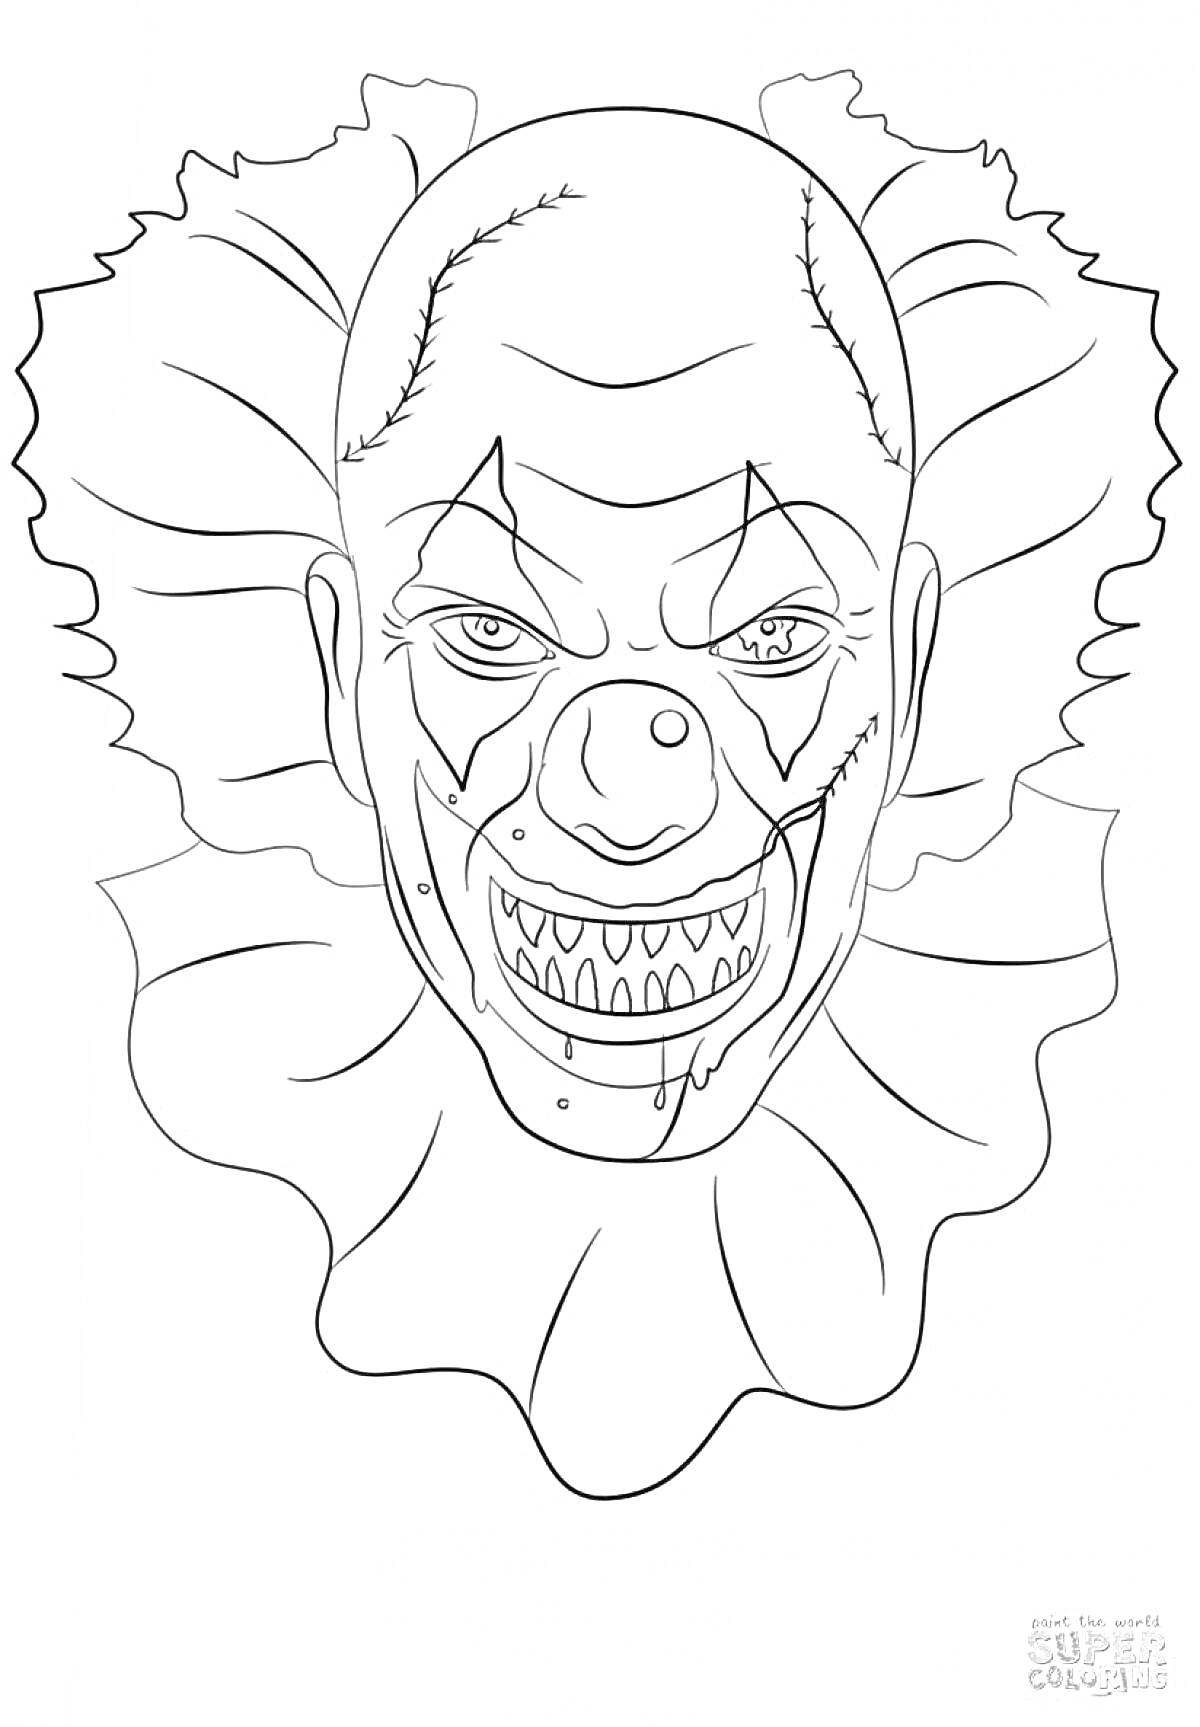 Раскраска Злой клоун с зубастой улыбкой и страшным выражением лица, в клоунском воротнике